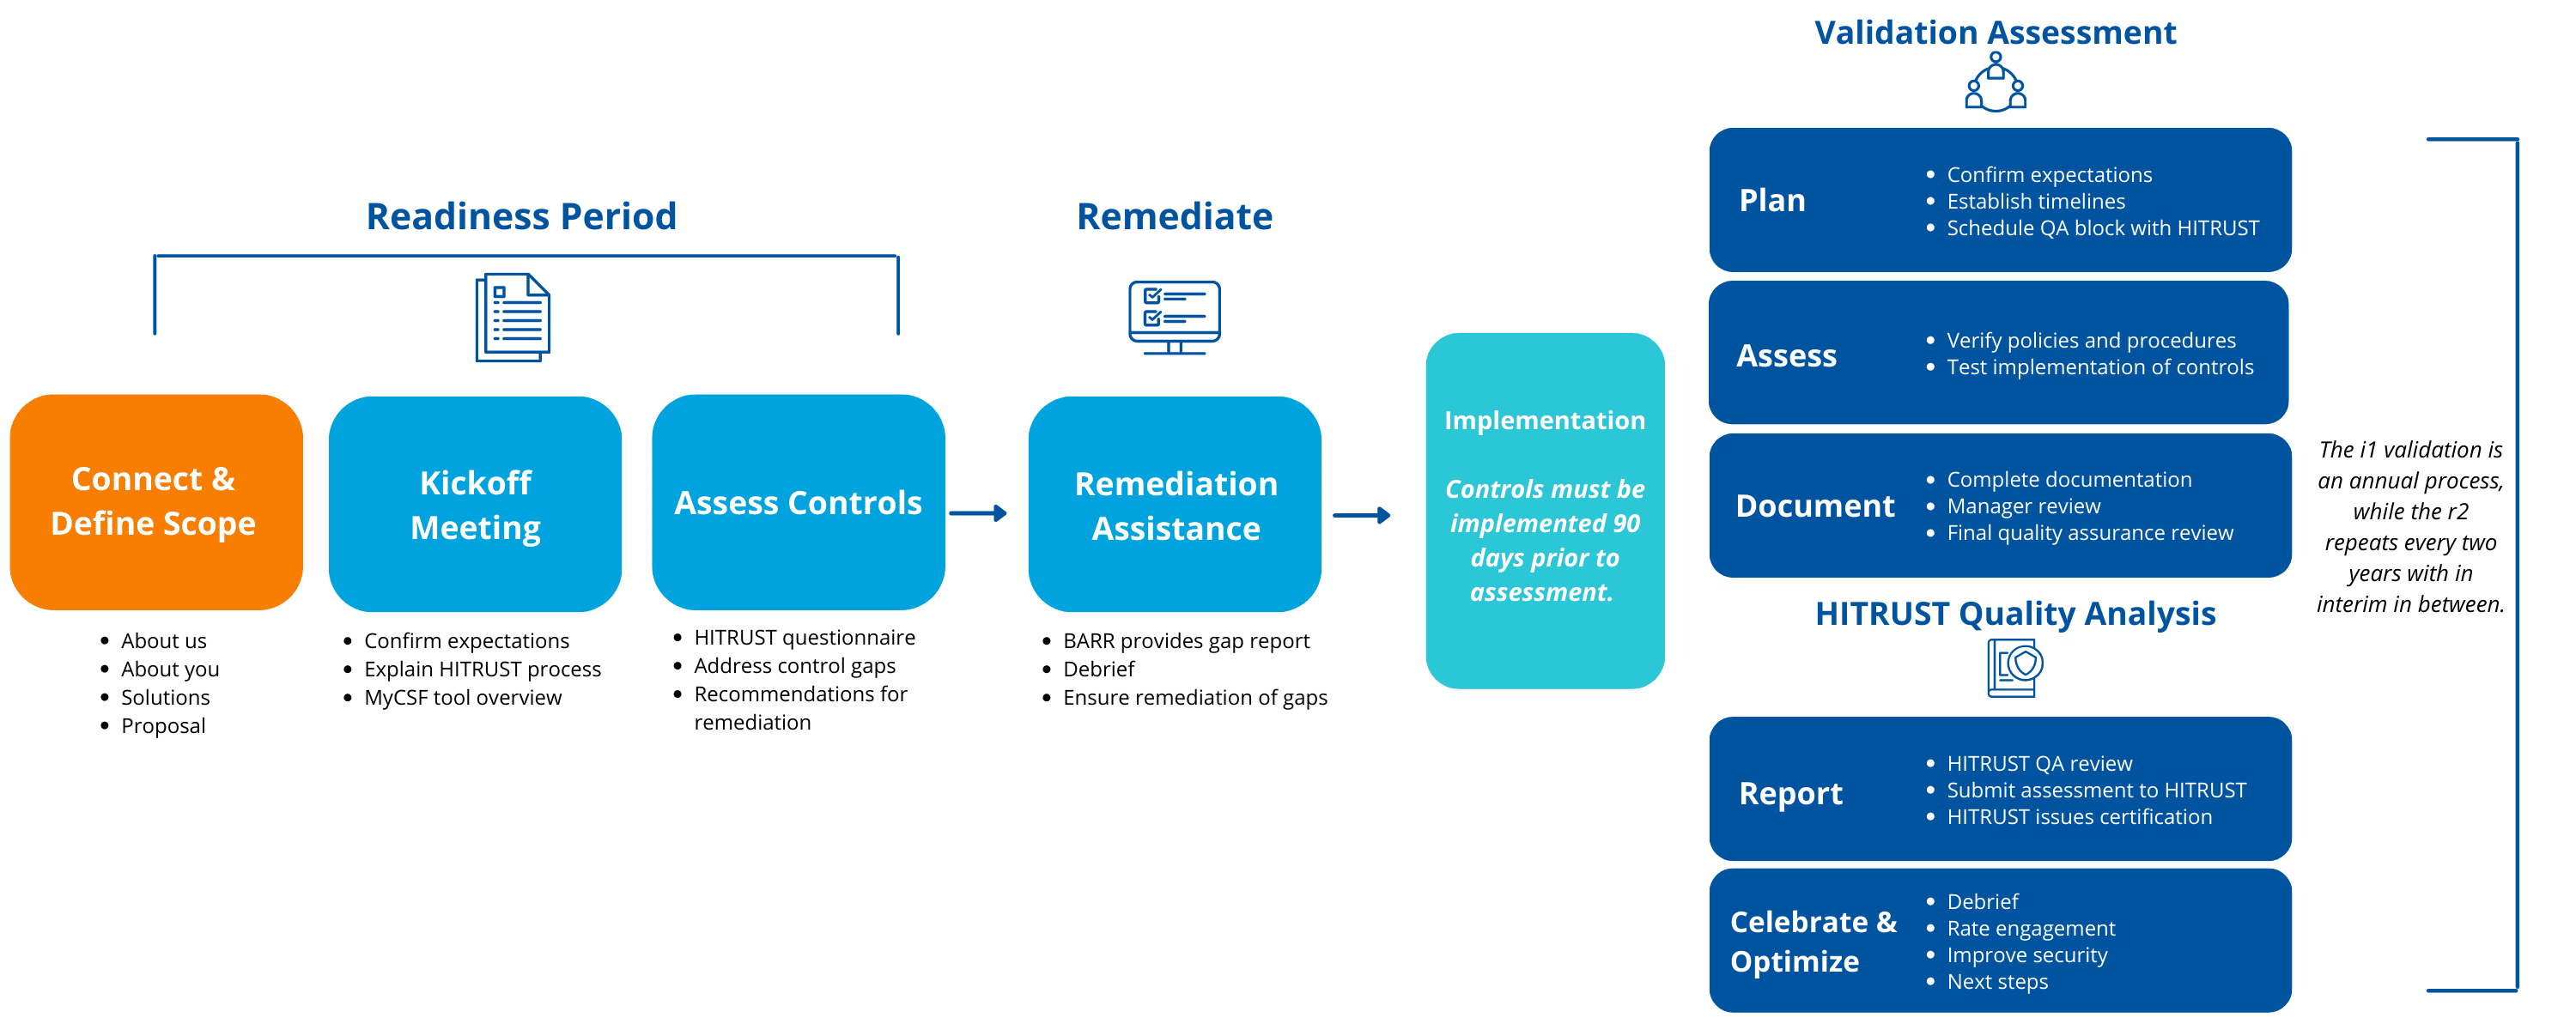 HITRUST certificaton process in 3 steps